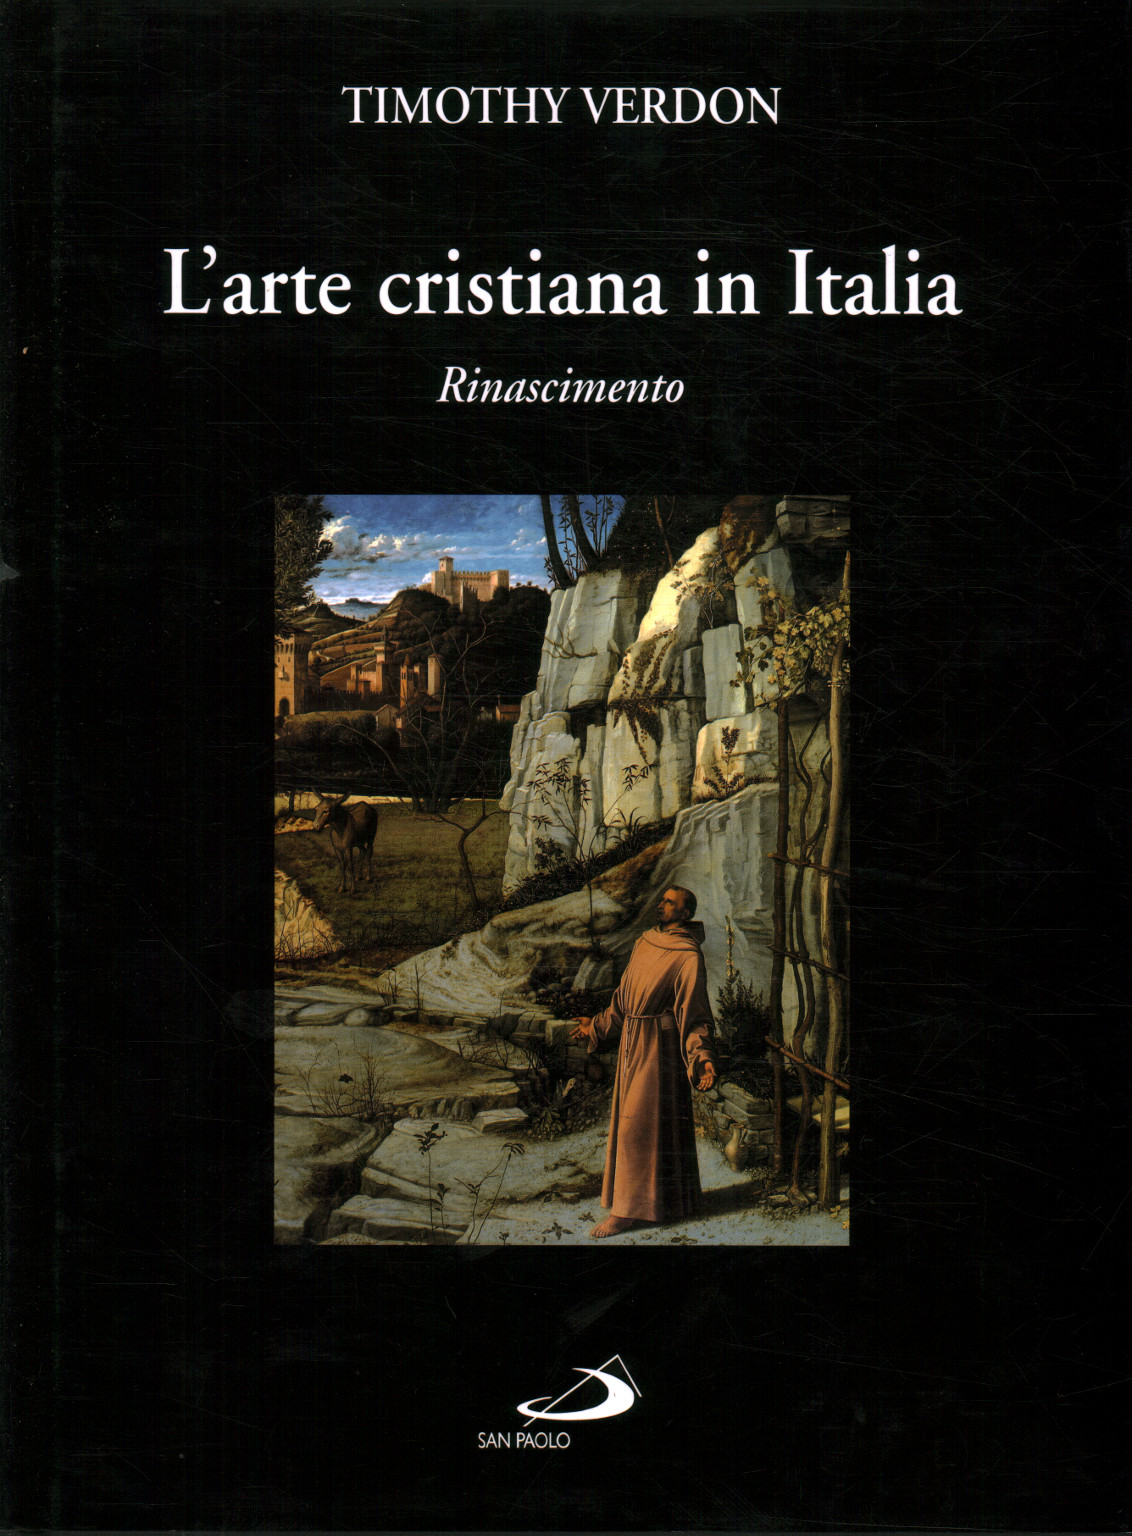 Christian art in Italy (volume 2), Timothy Verdon